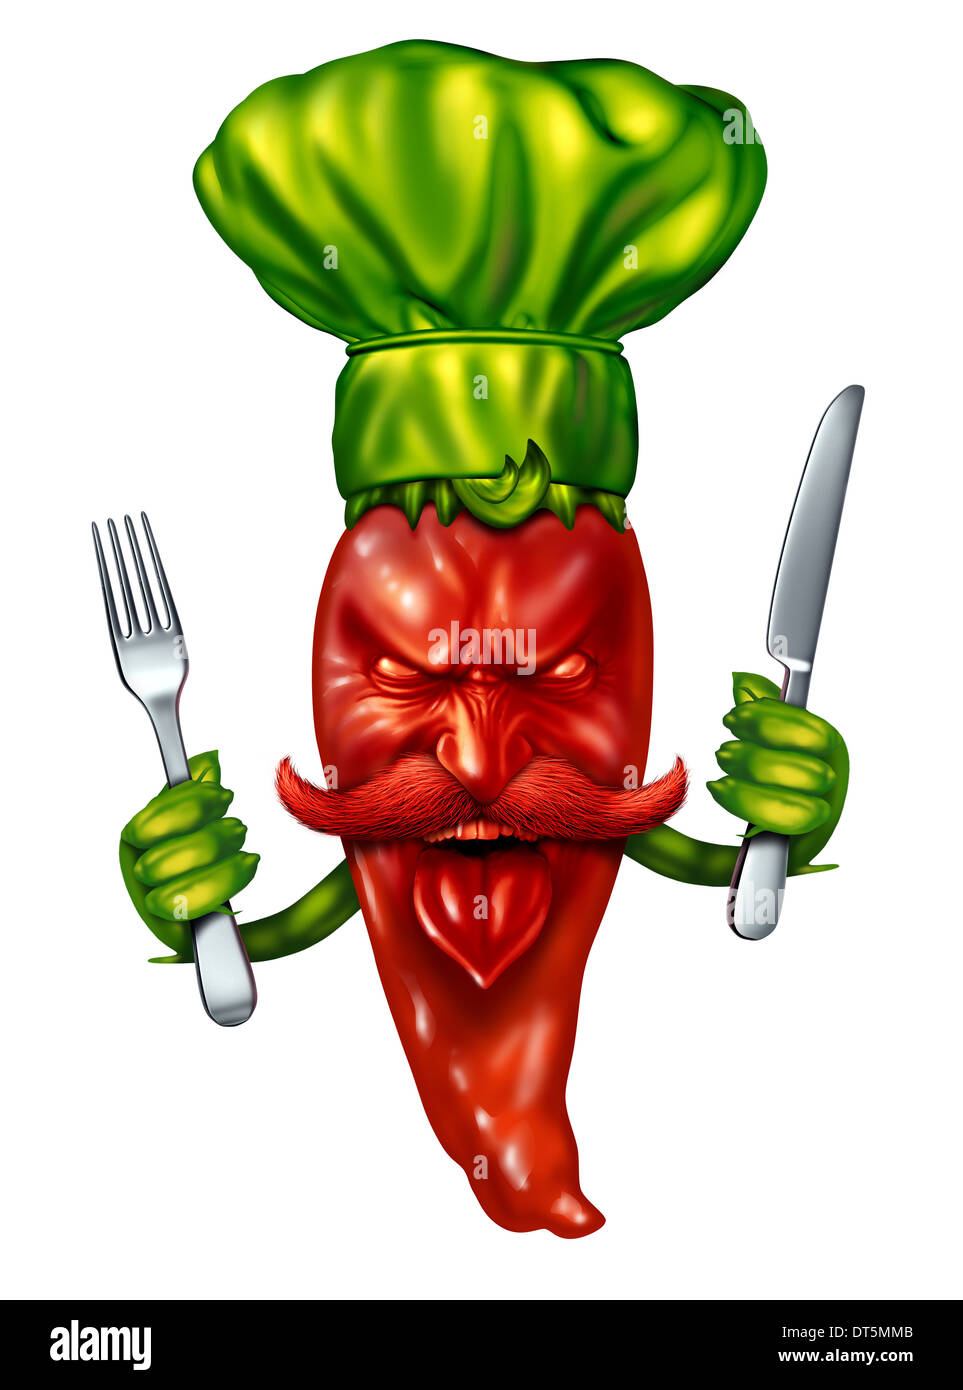 Würzige Küche Food-Konzept mit heiße rote Paprika Charakter einen grünen Koch Hut hält einen Abendessen Gabel und Messer als symbol Stockfoto